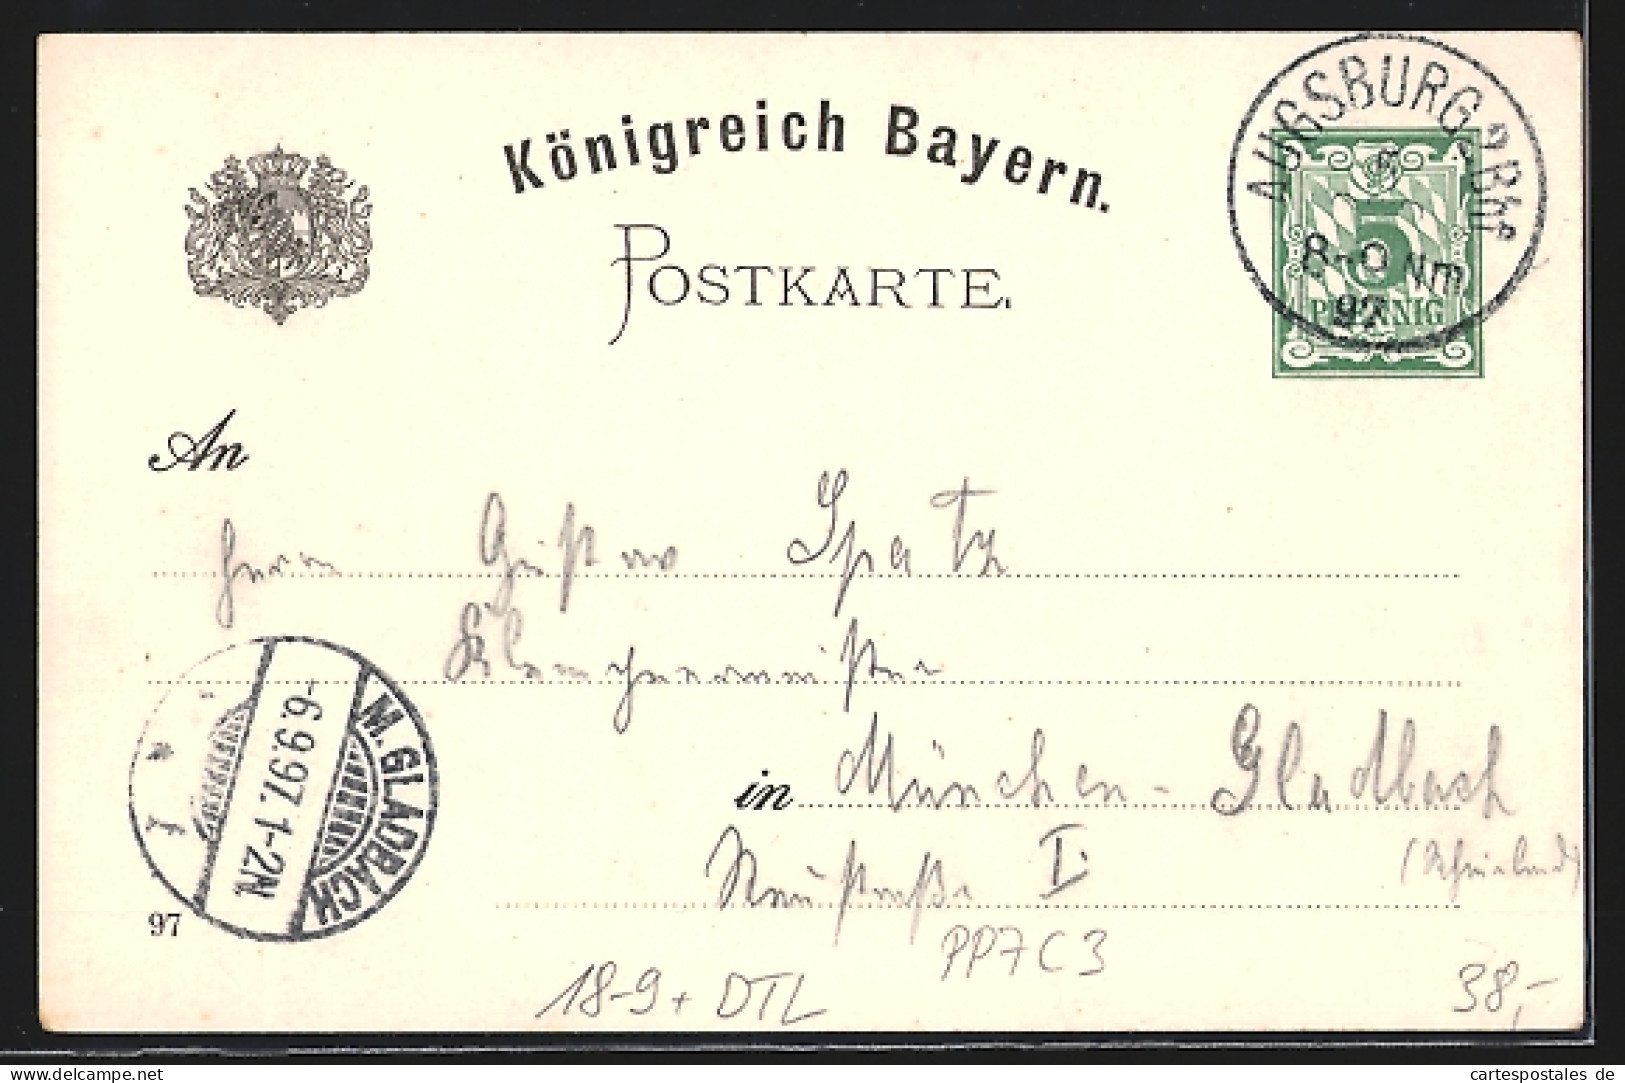 Lithographie Ganzsache Bayern PP7C3: Augsburg, 50.jähriges Jubliäum & Turnhallen-Einweihung Des TVA 1847 A.V.  - Tarjetas